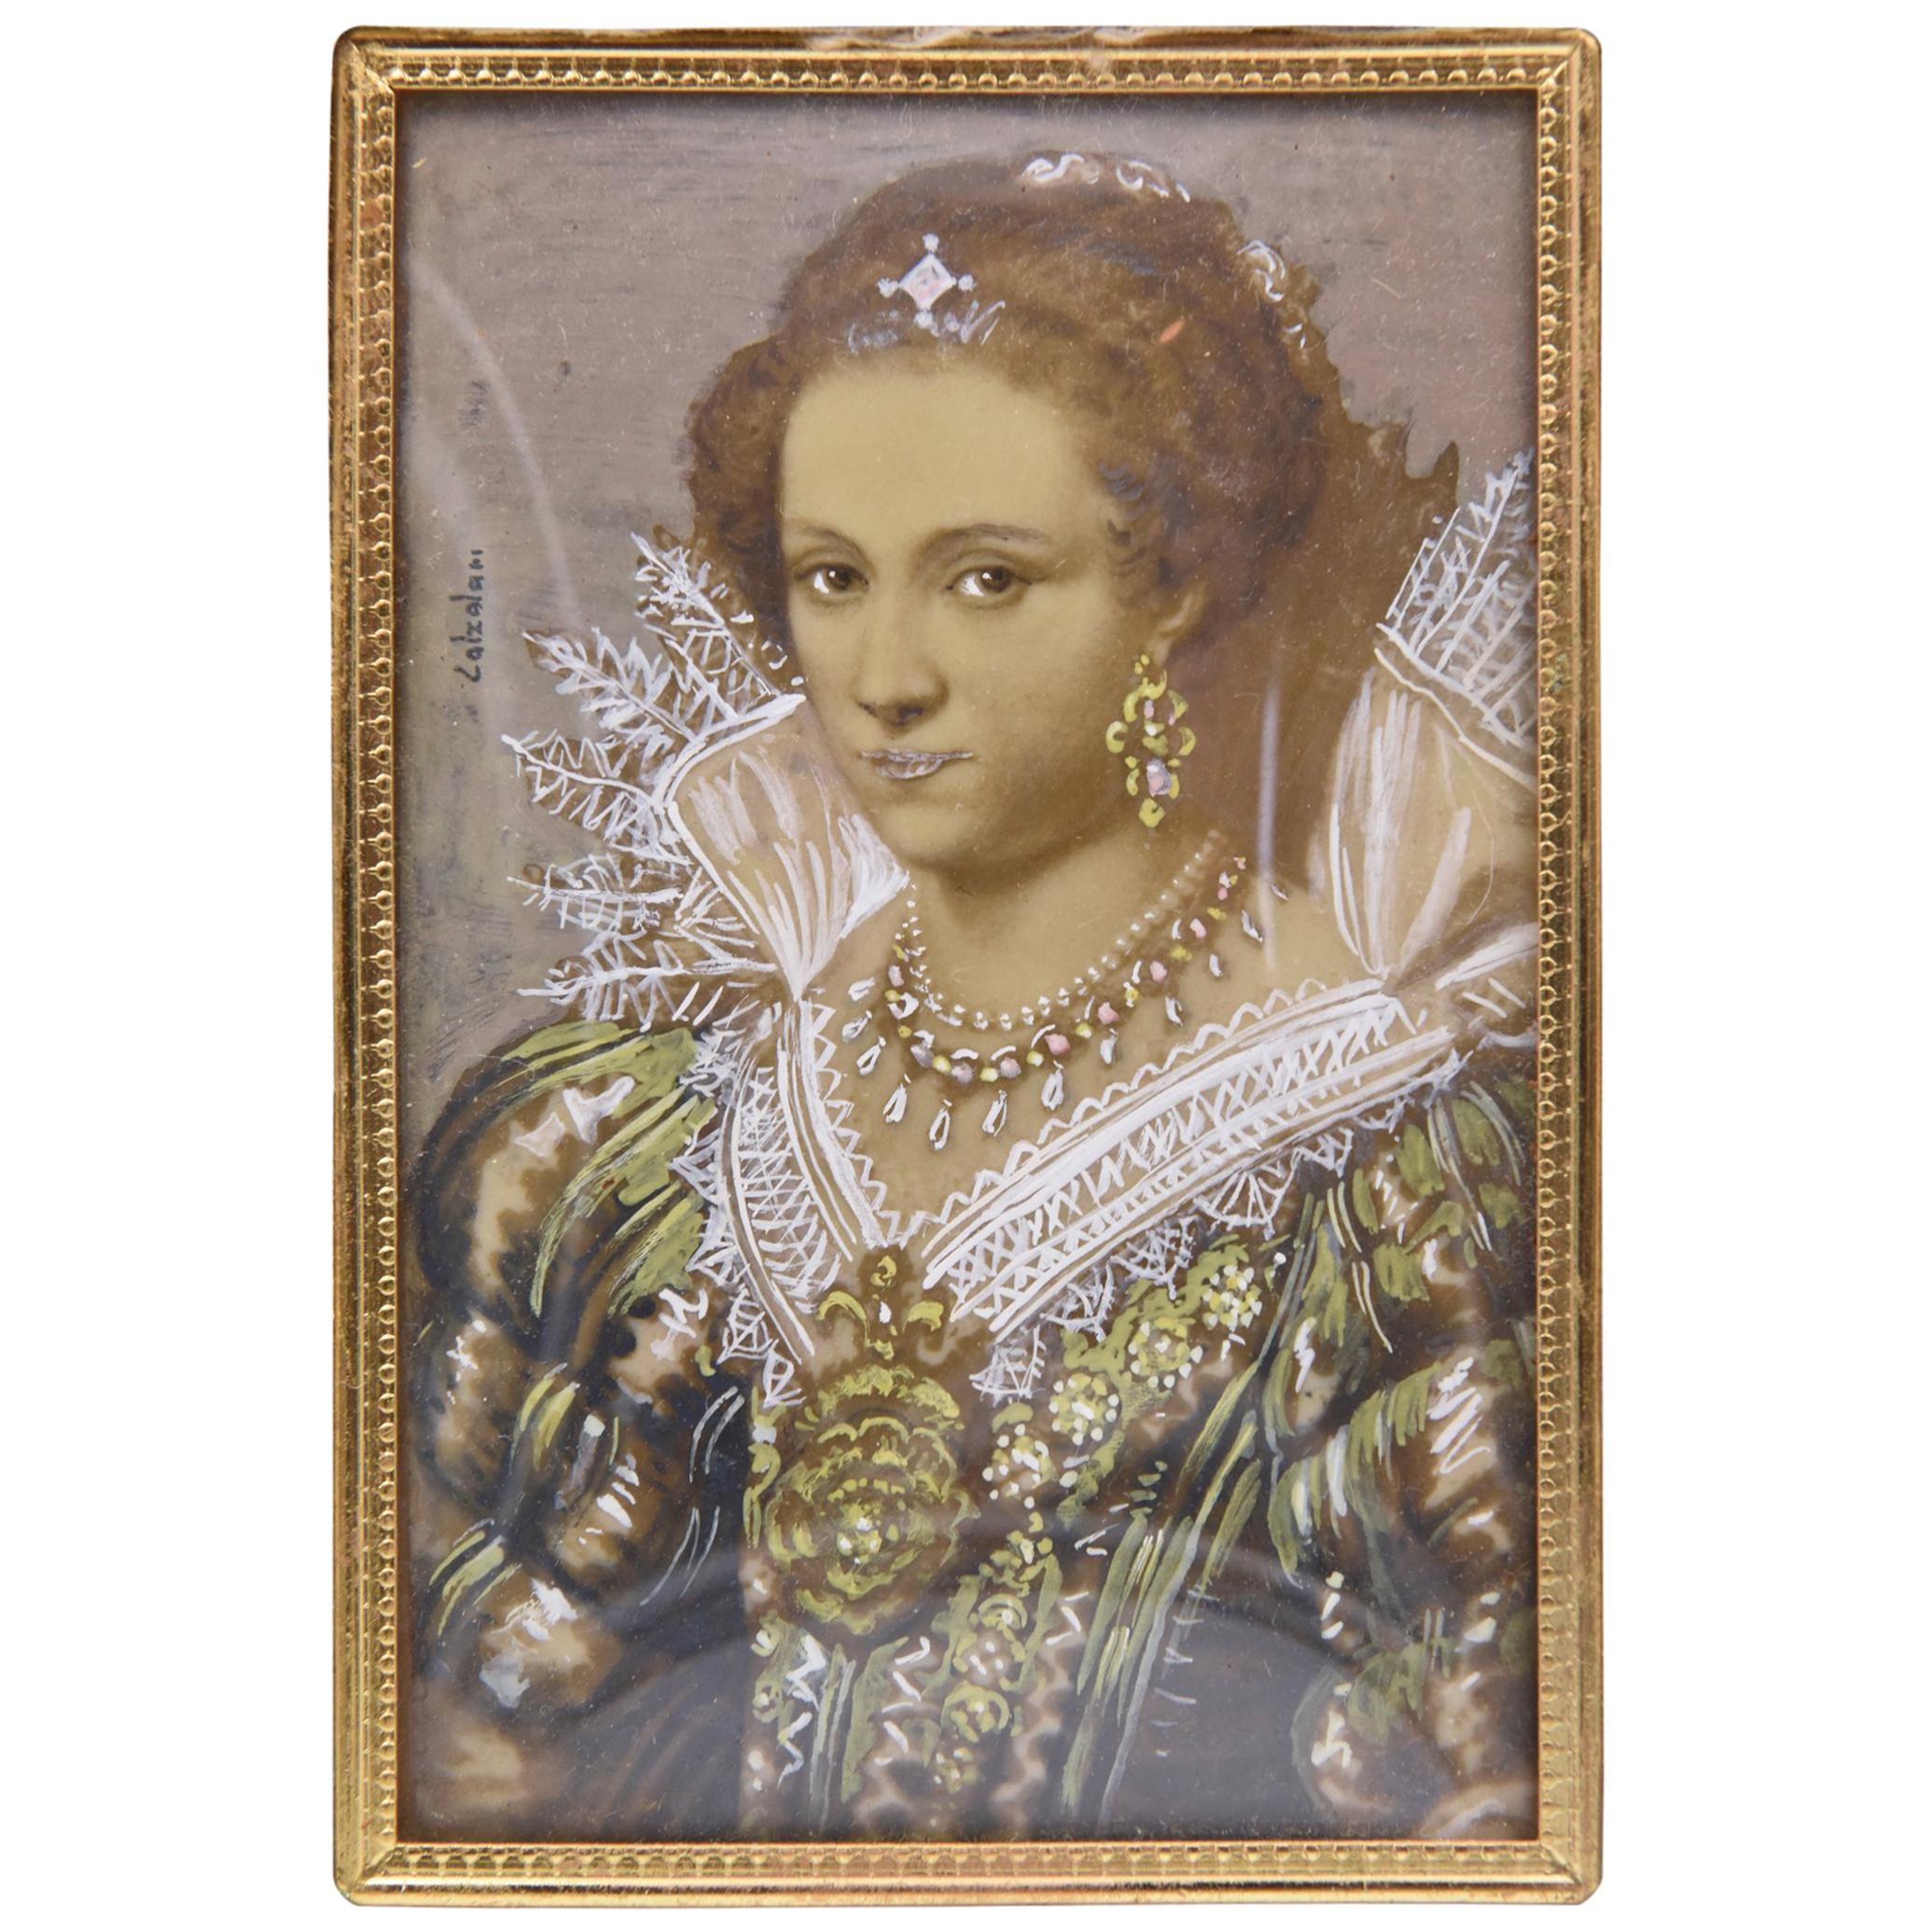 Portrait Painting of a Royal Elizabethan Woman by Ida Calzolari